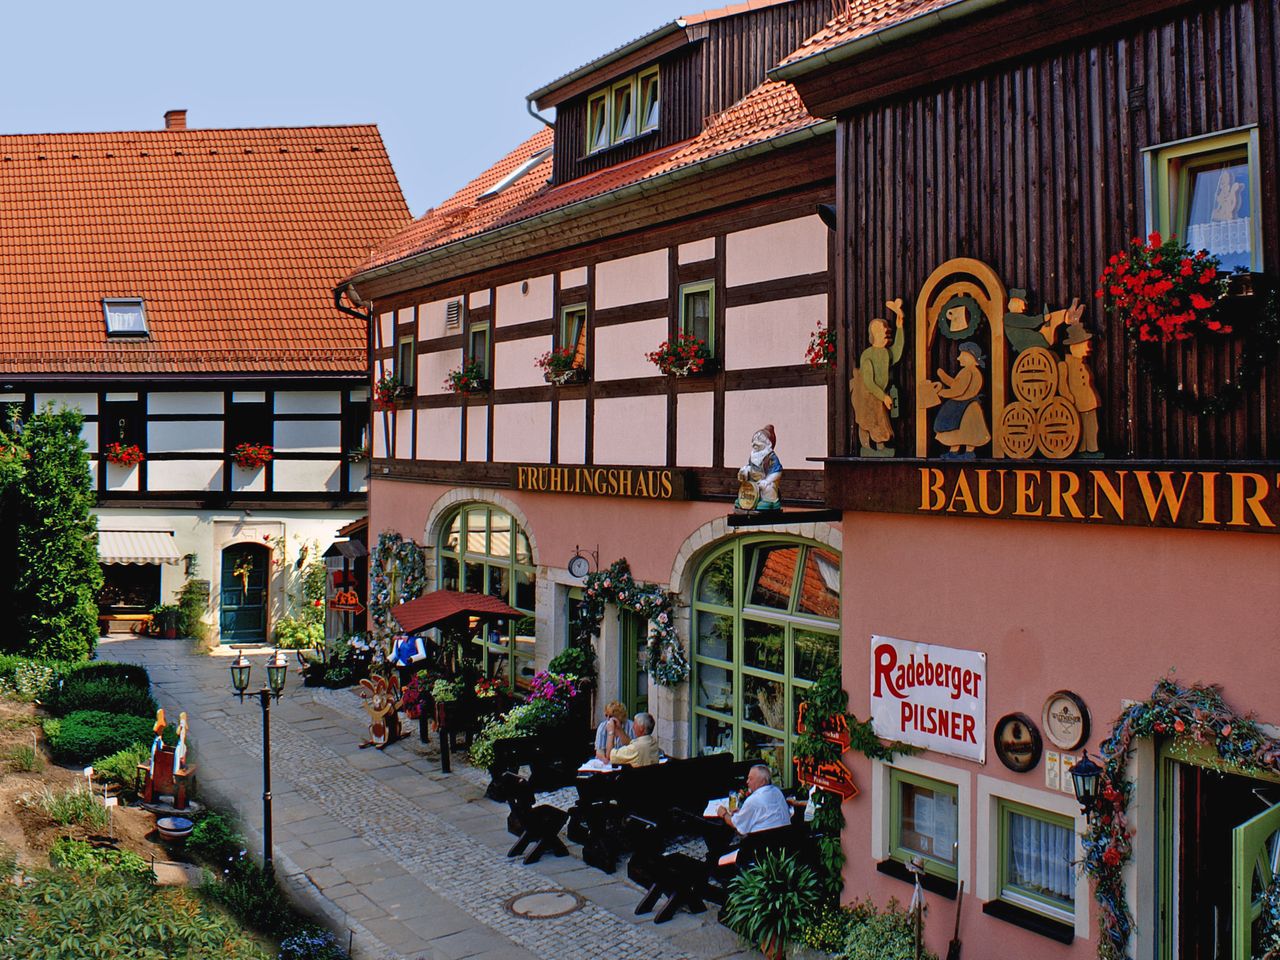 Sächsische Schweiz: Erlebnis-Familien-Auszeit mit HP